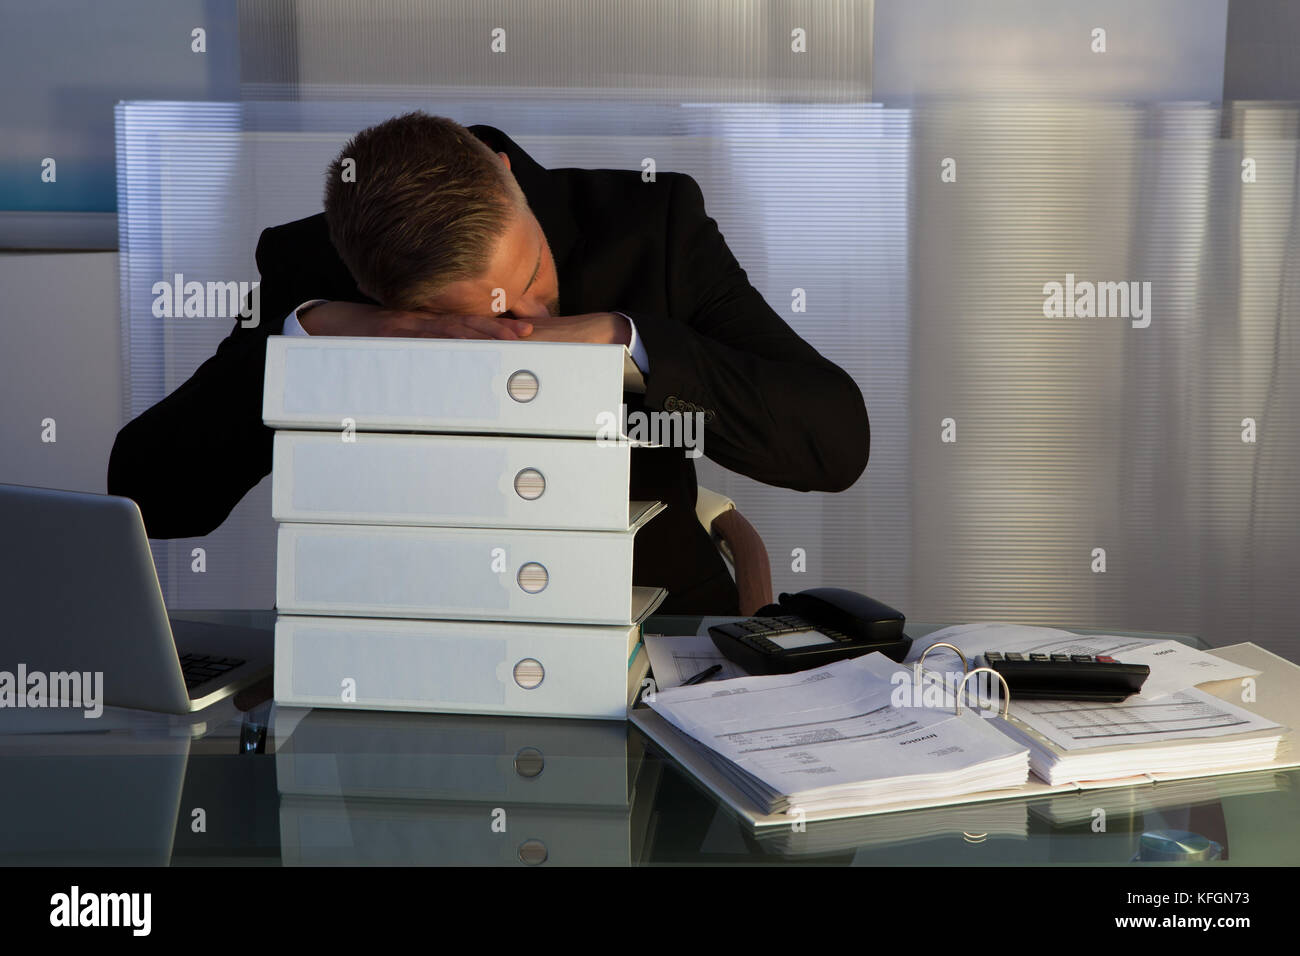 Erschöpft schlafen ein Geschäftsmann eine der Dateien stack wie er spät im Büro während des Abends arbeitet, wie er versucht, eine Frist für die Morgen zu begegnen Stockfoto